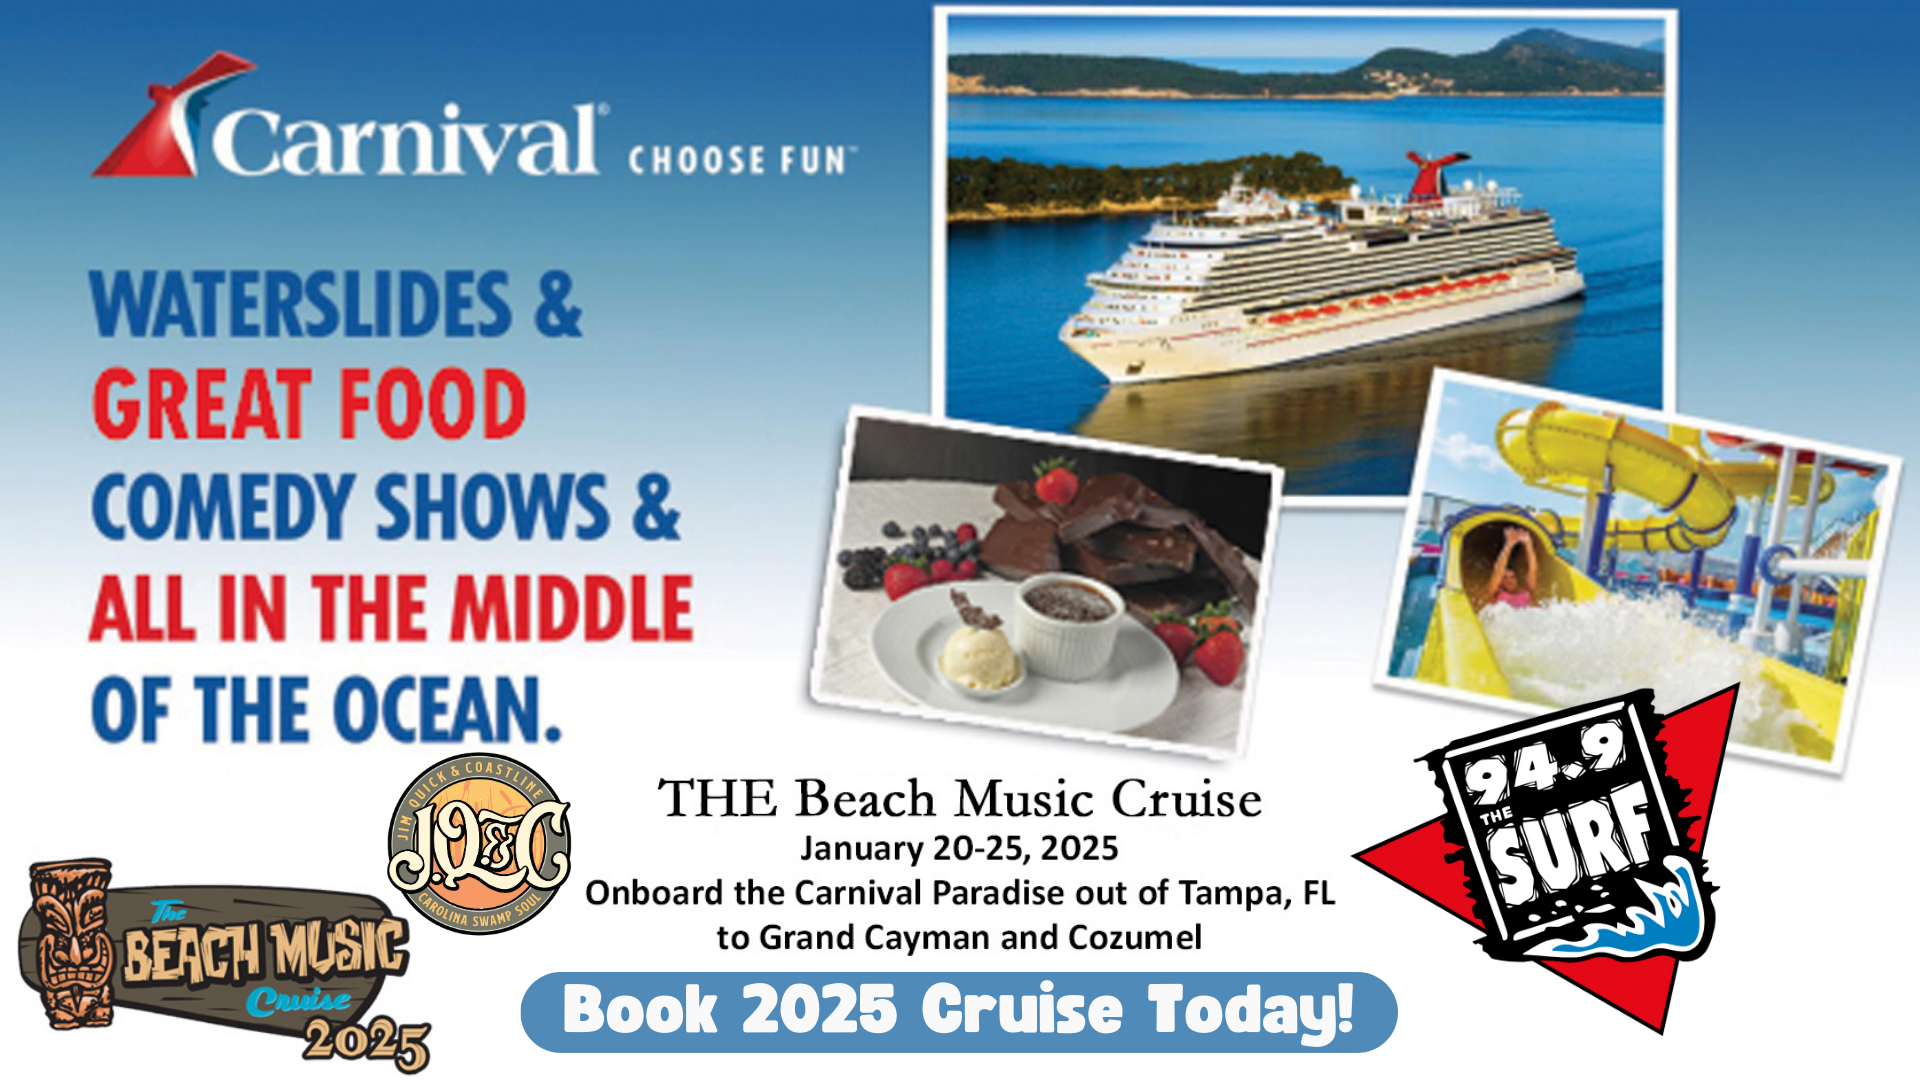 The Beach Music Cruise 2025